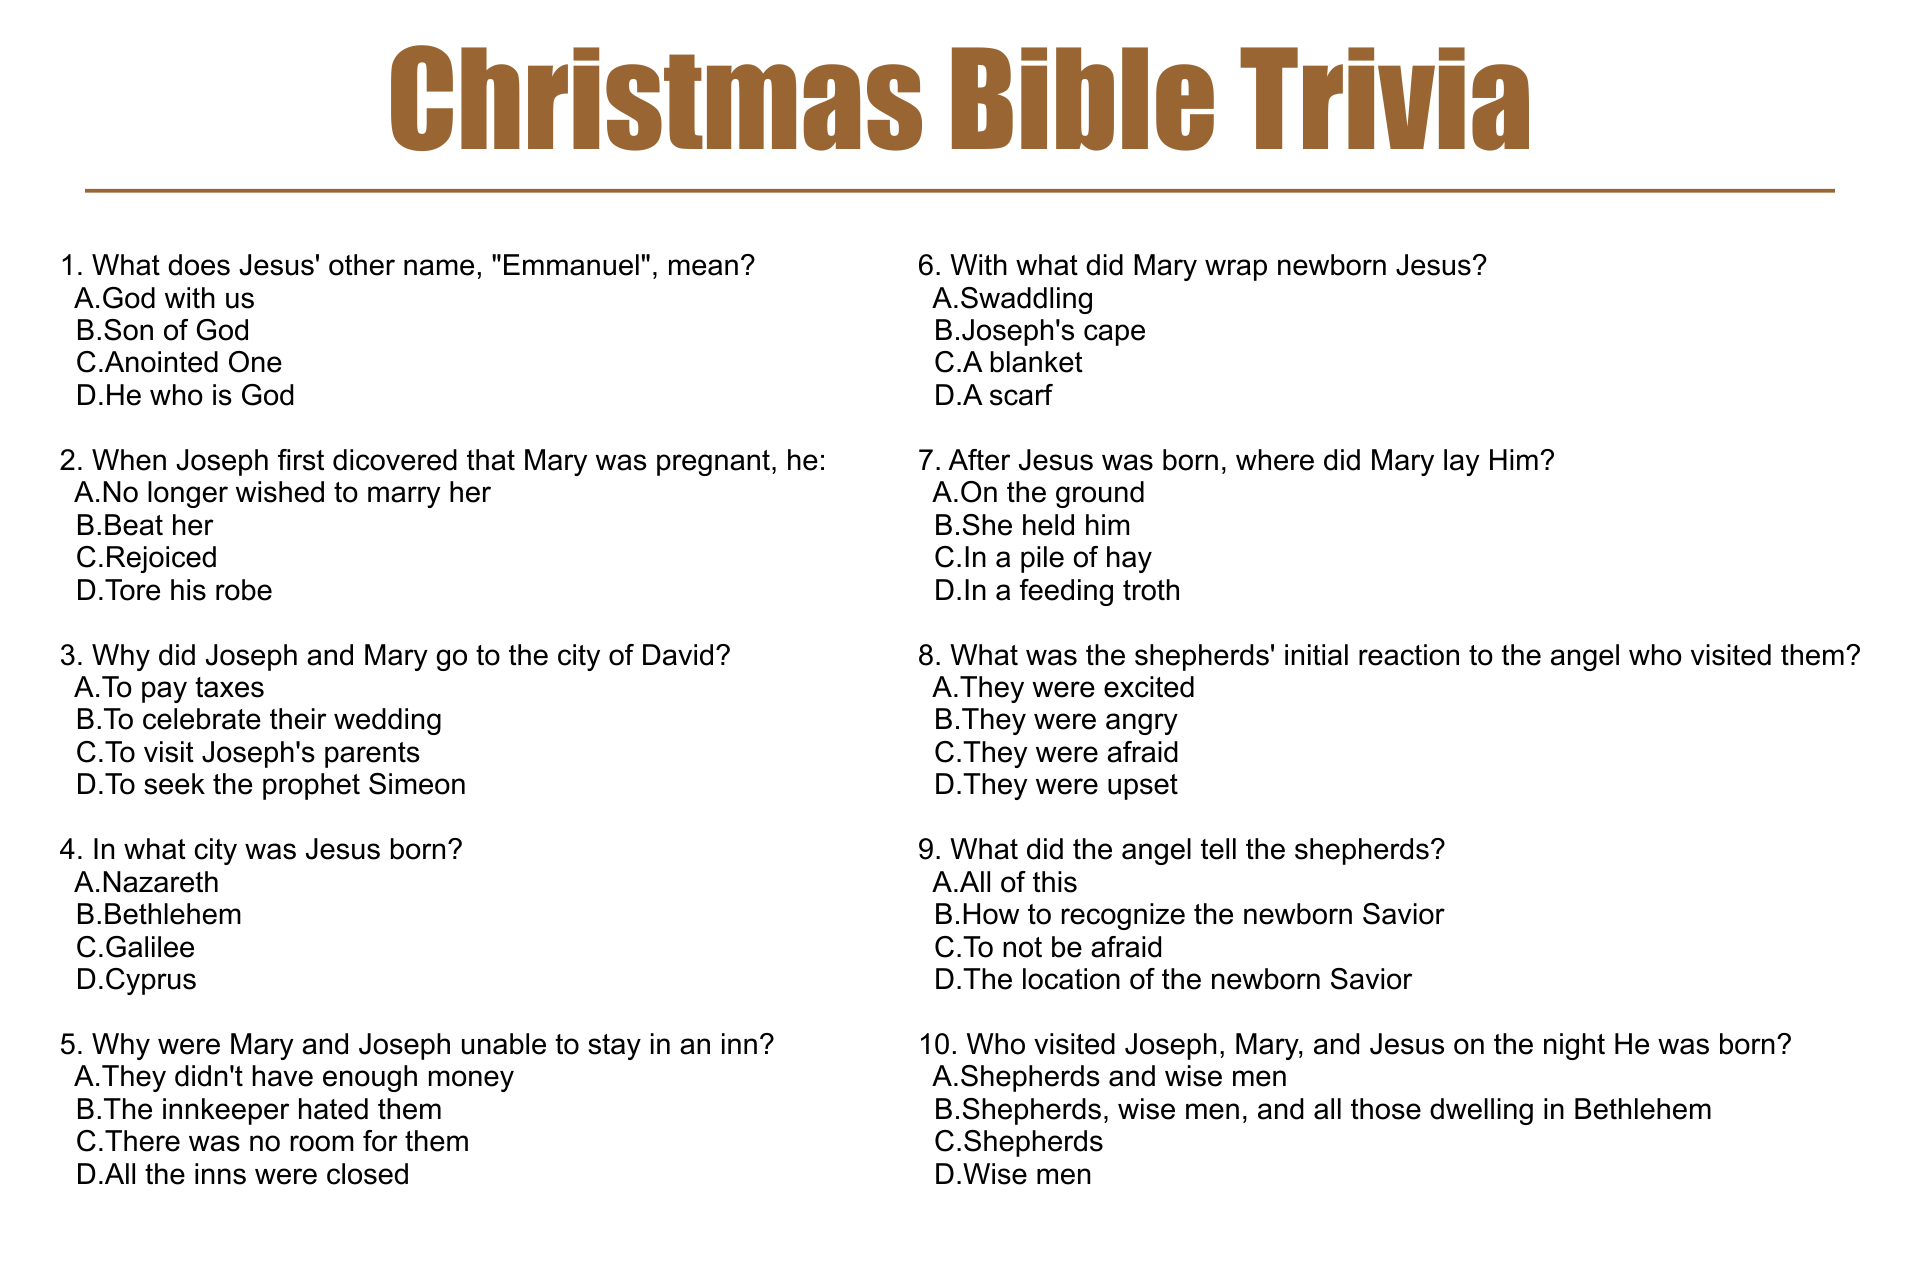 Biblical Free Printable Christmas Bible Trivia